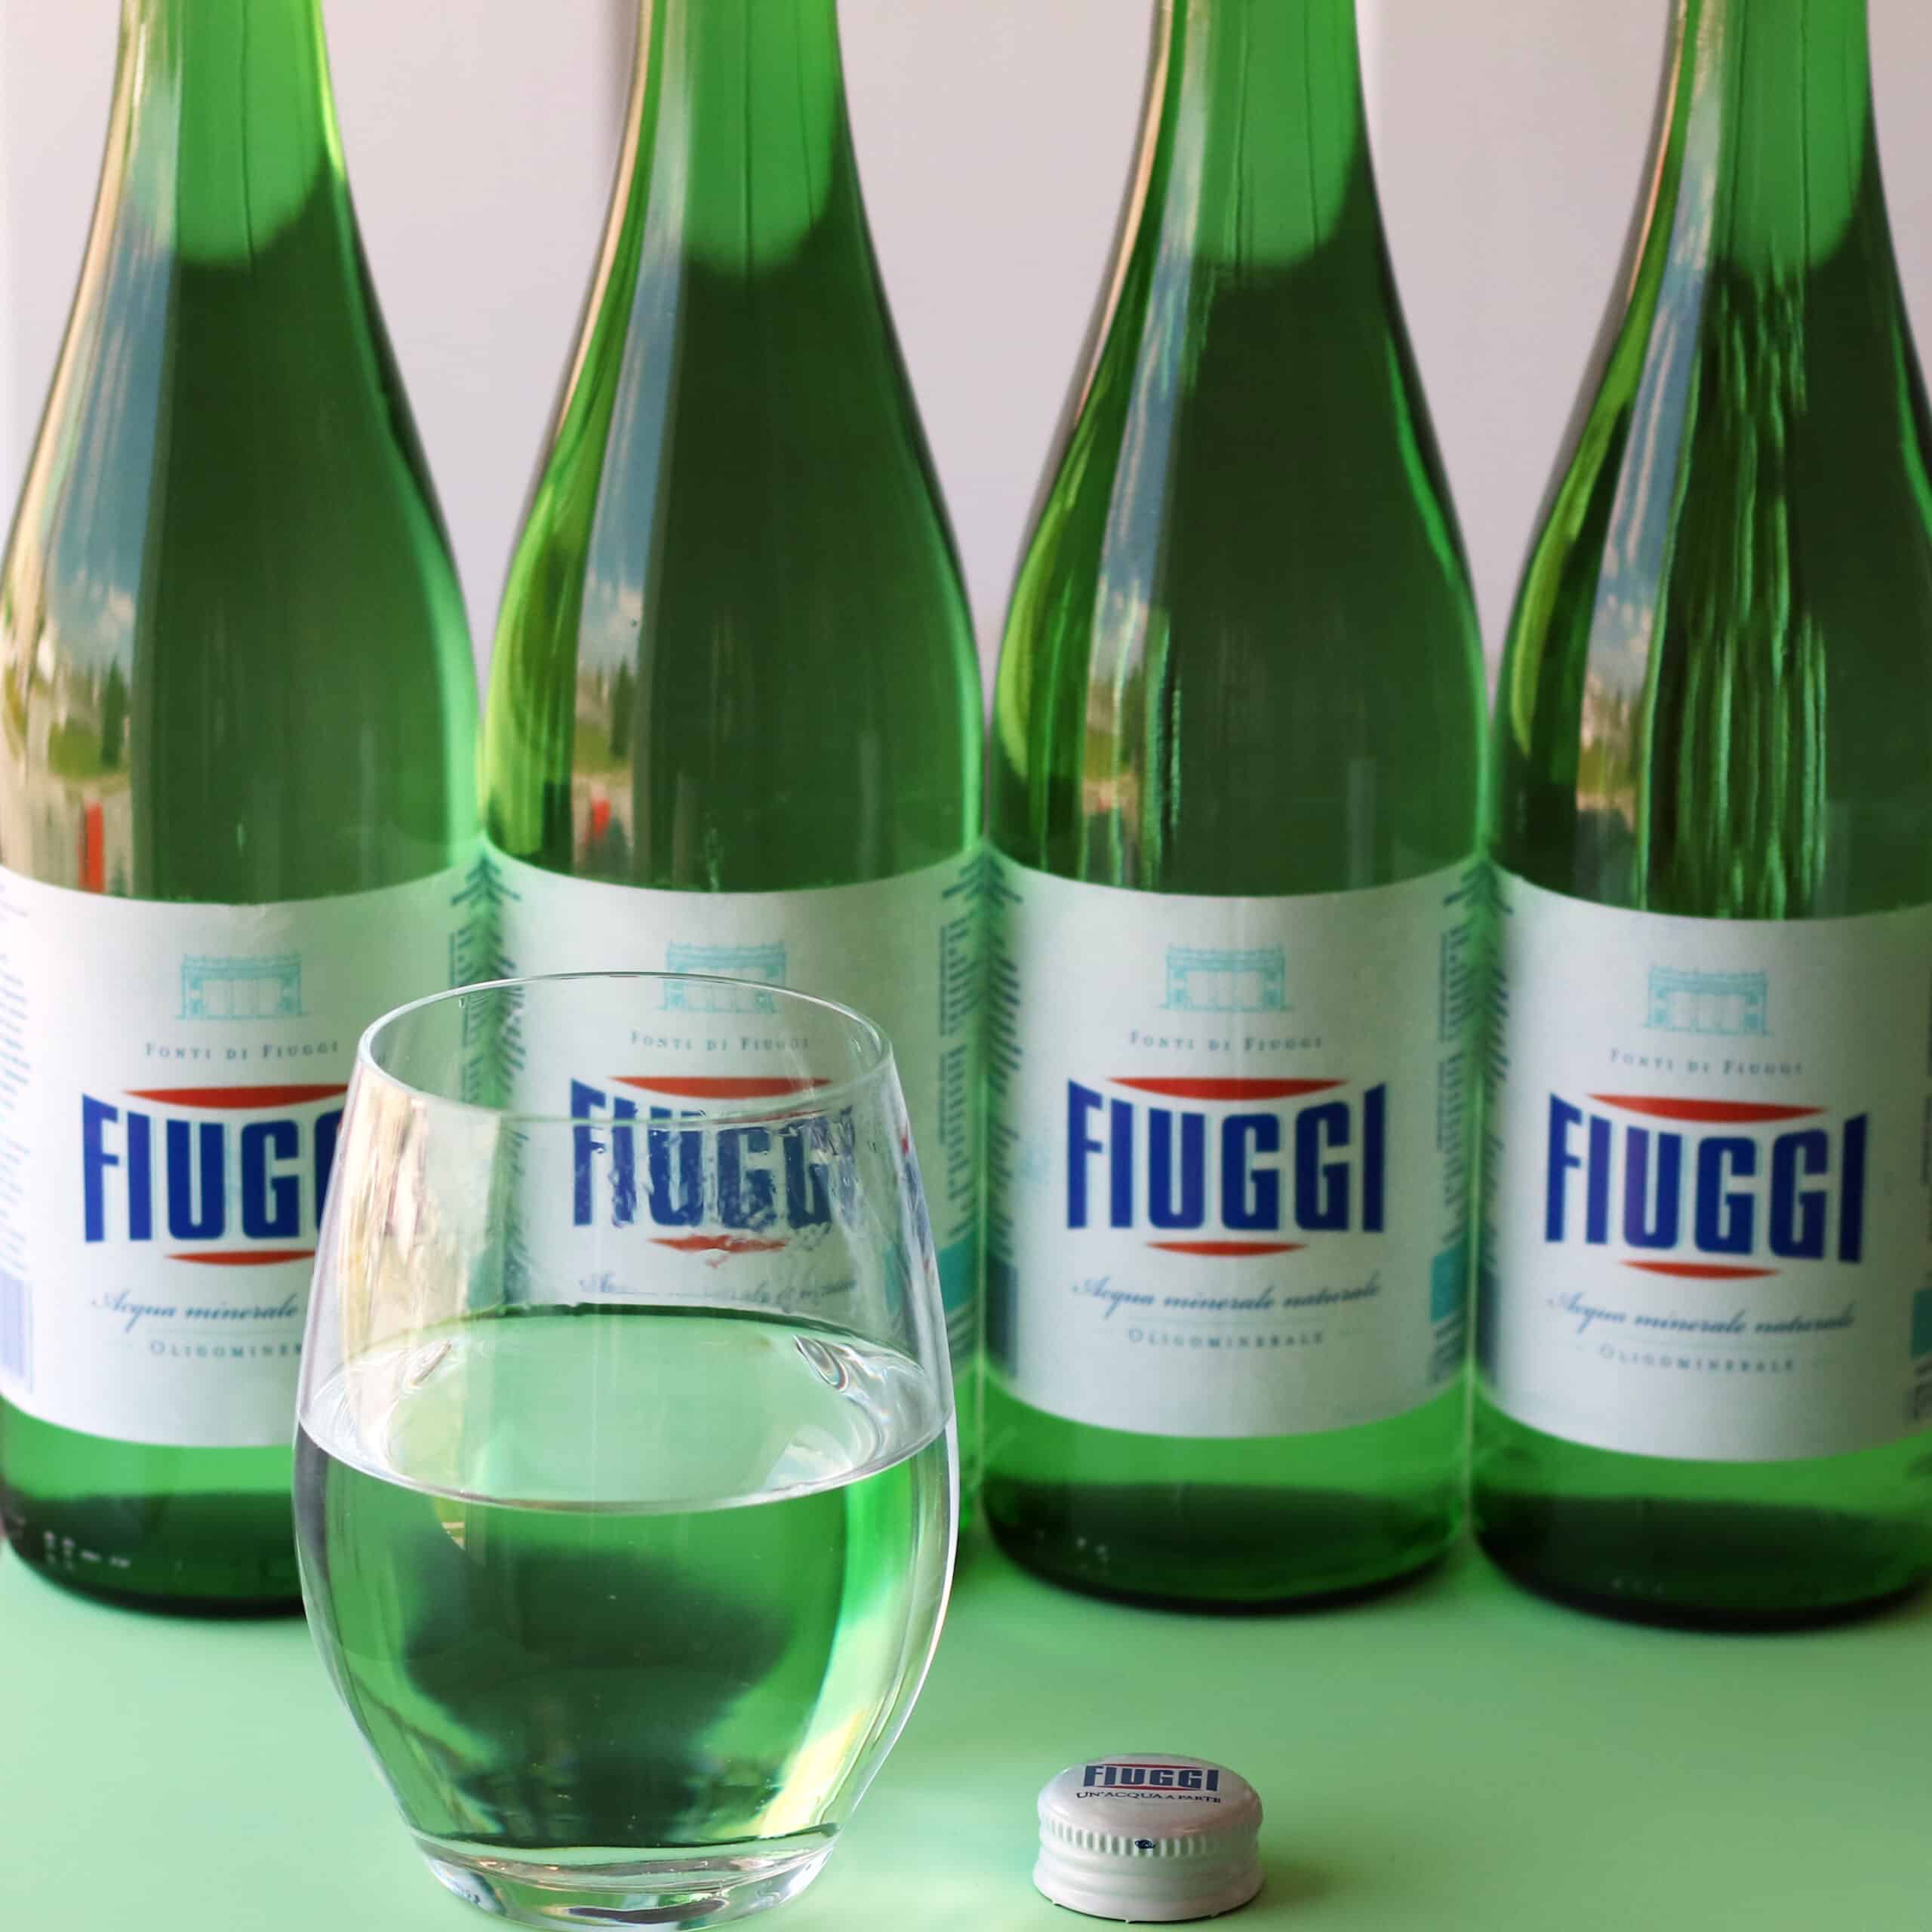 The water of Fiuggi